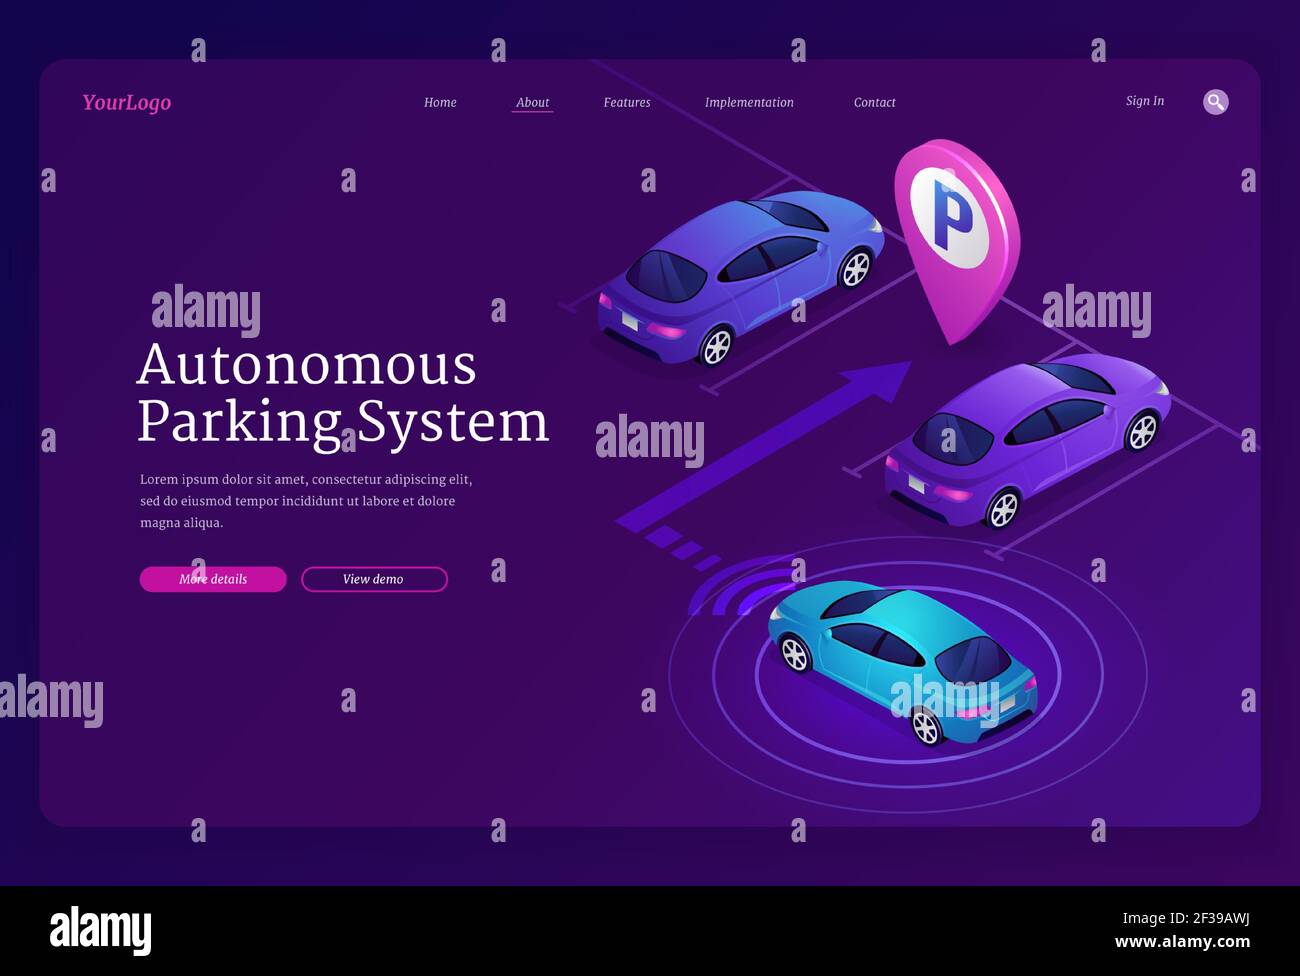 Autonomous parking system isometric landing page Stock Vector